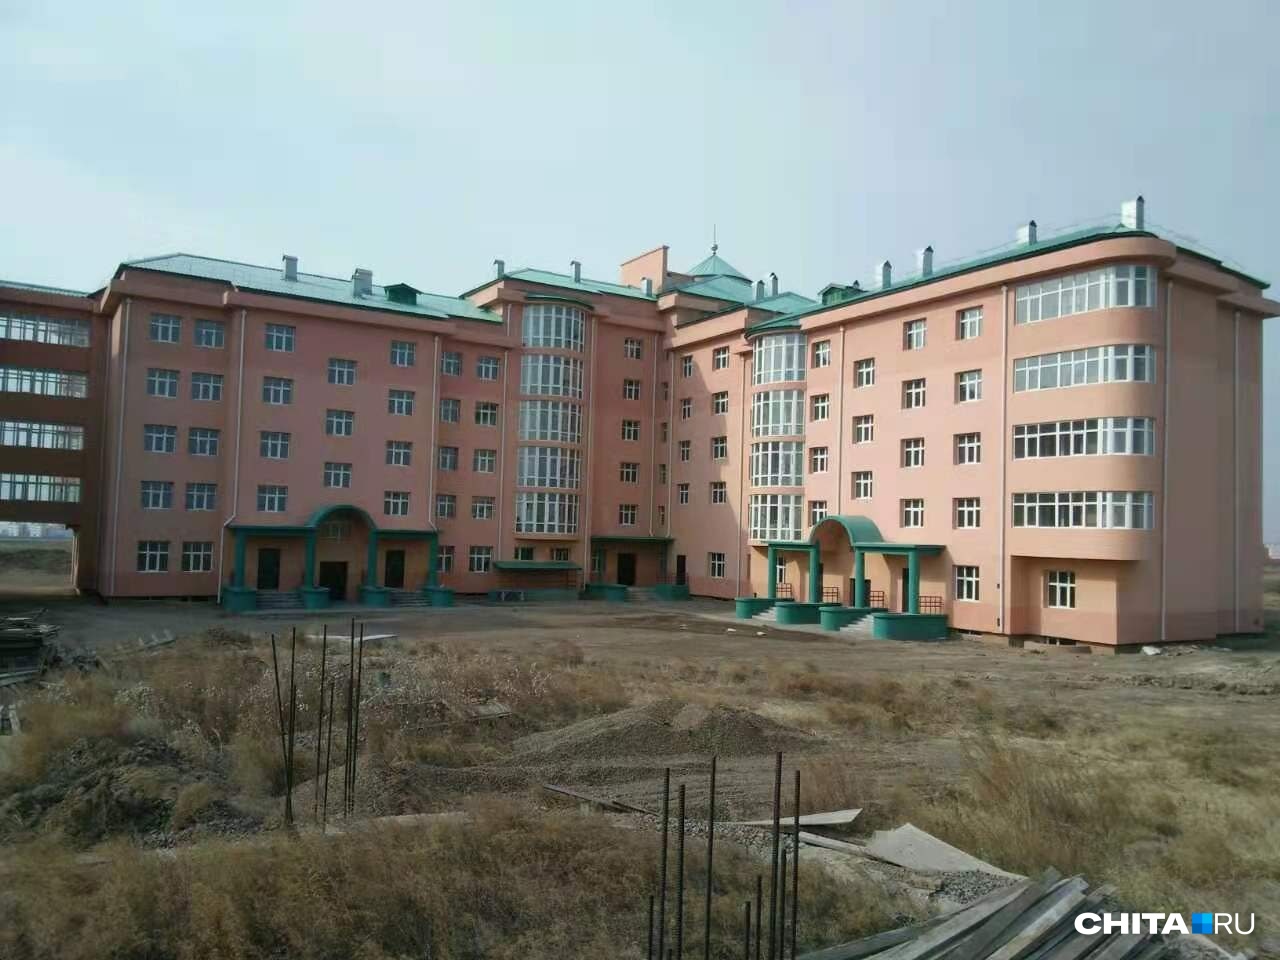 Микрорайон в Забайкалье, построенный в 2008 г., планируют сдать в 2023-м